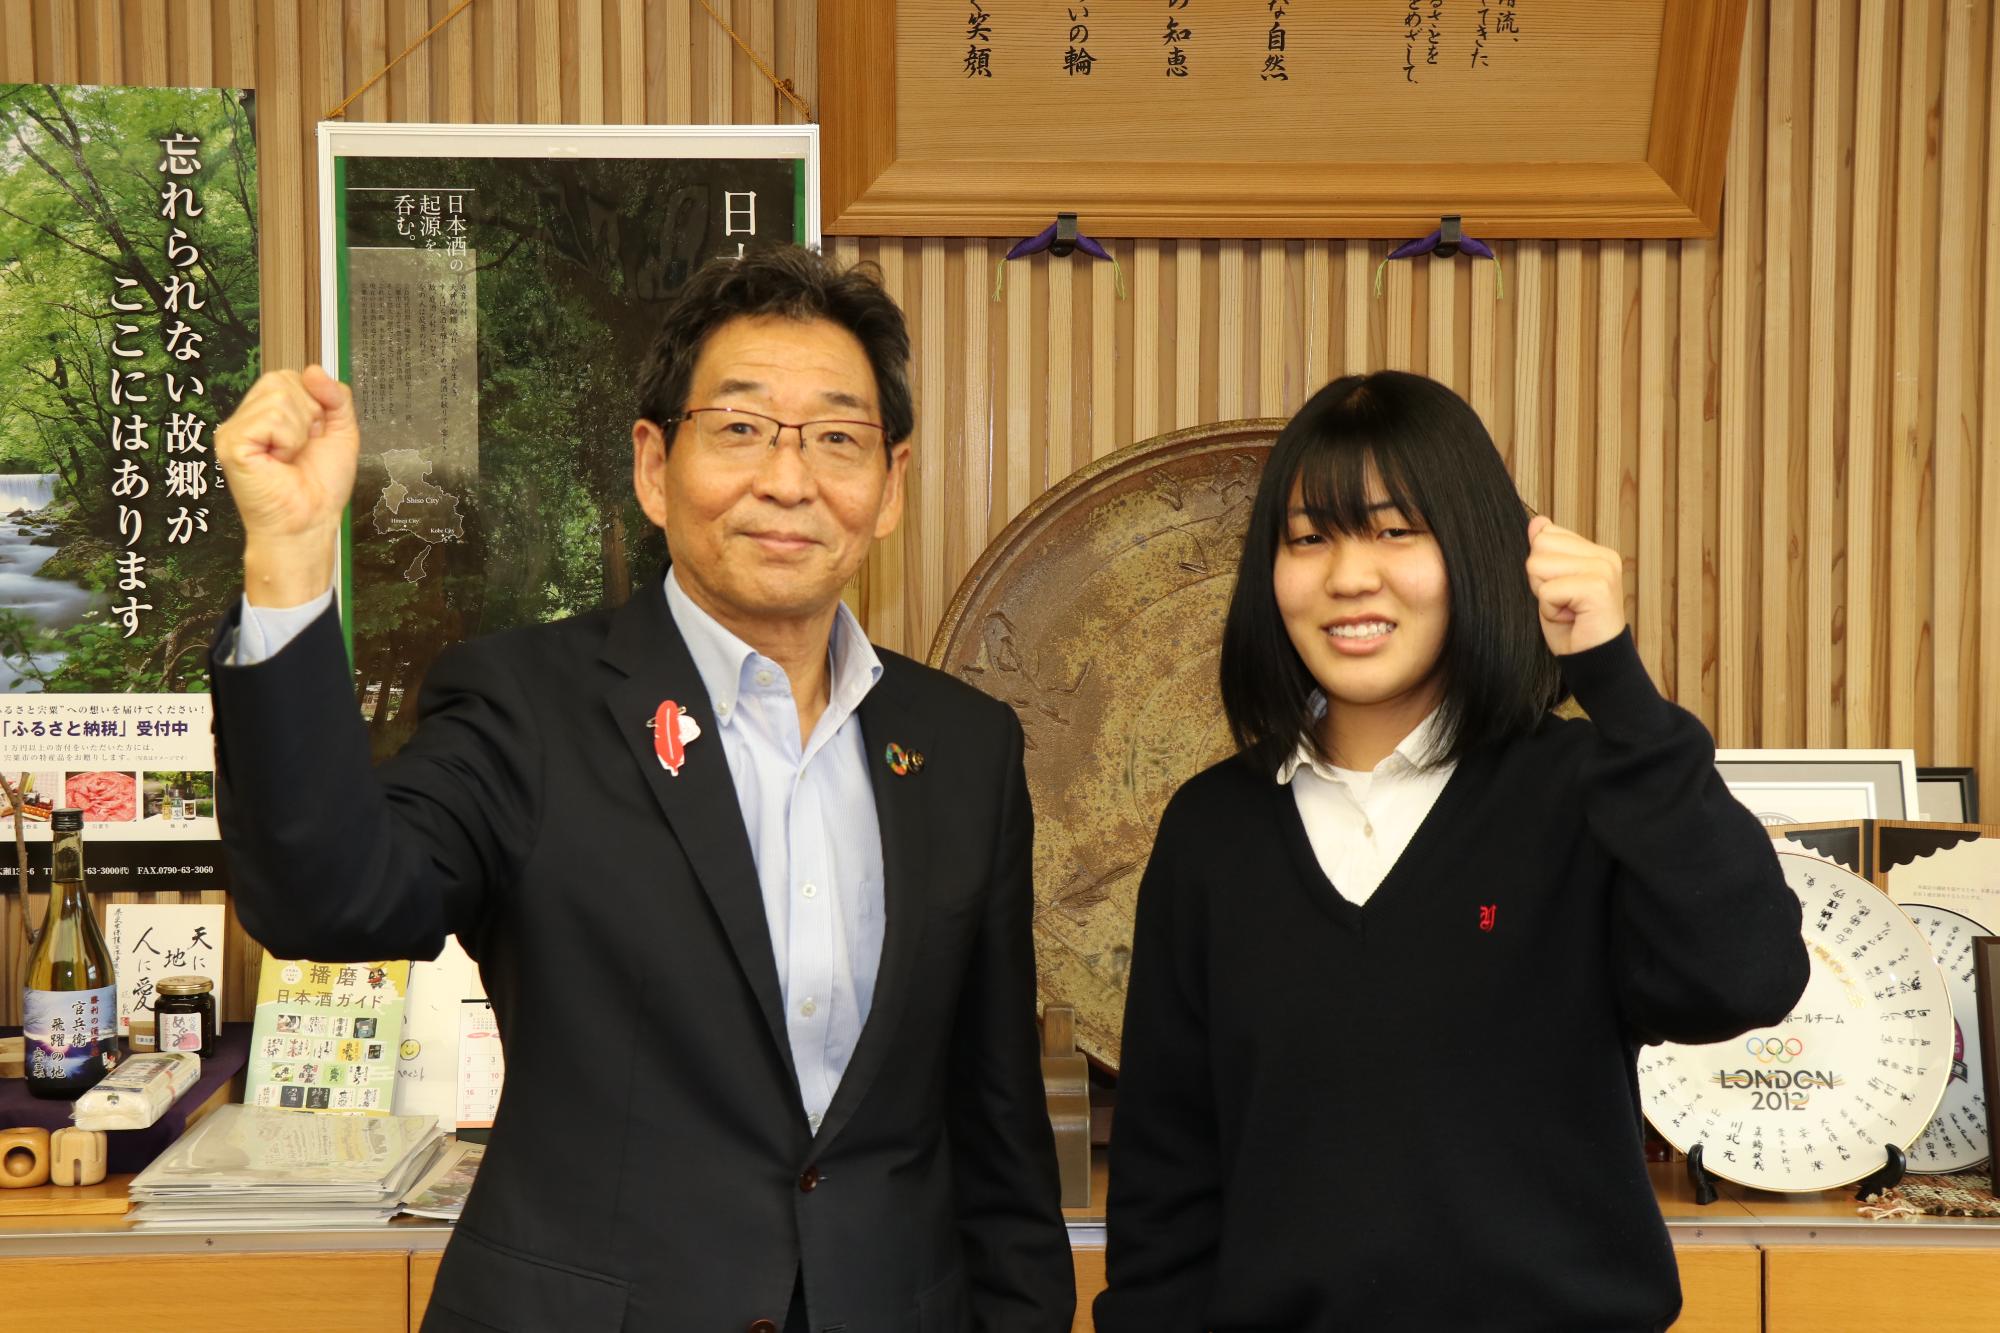 全国大会に出場する山崎高校の秦さんと市長が並んでガッツポーズしている写真